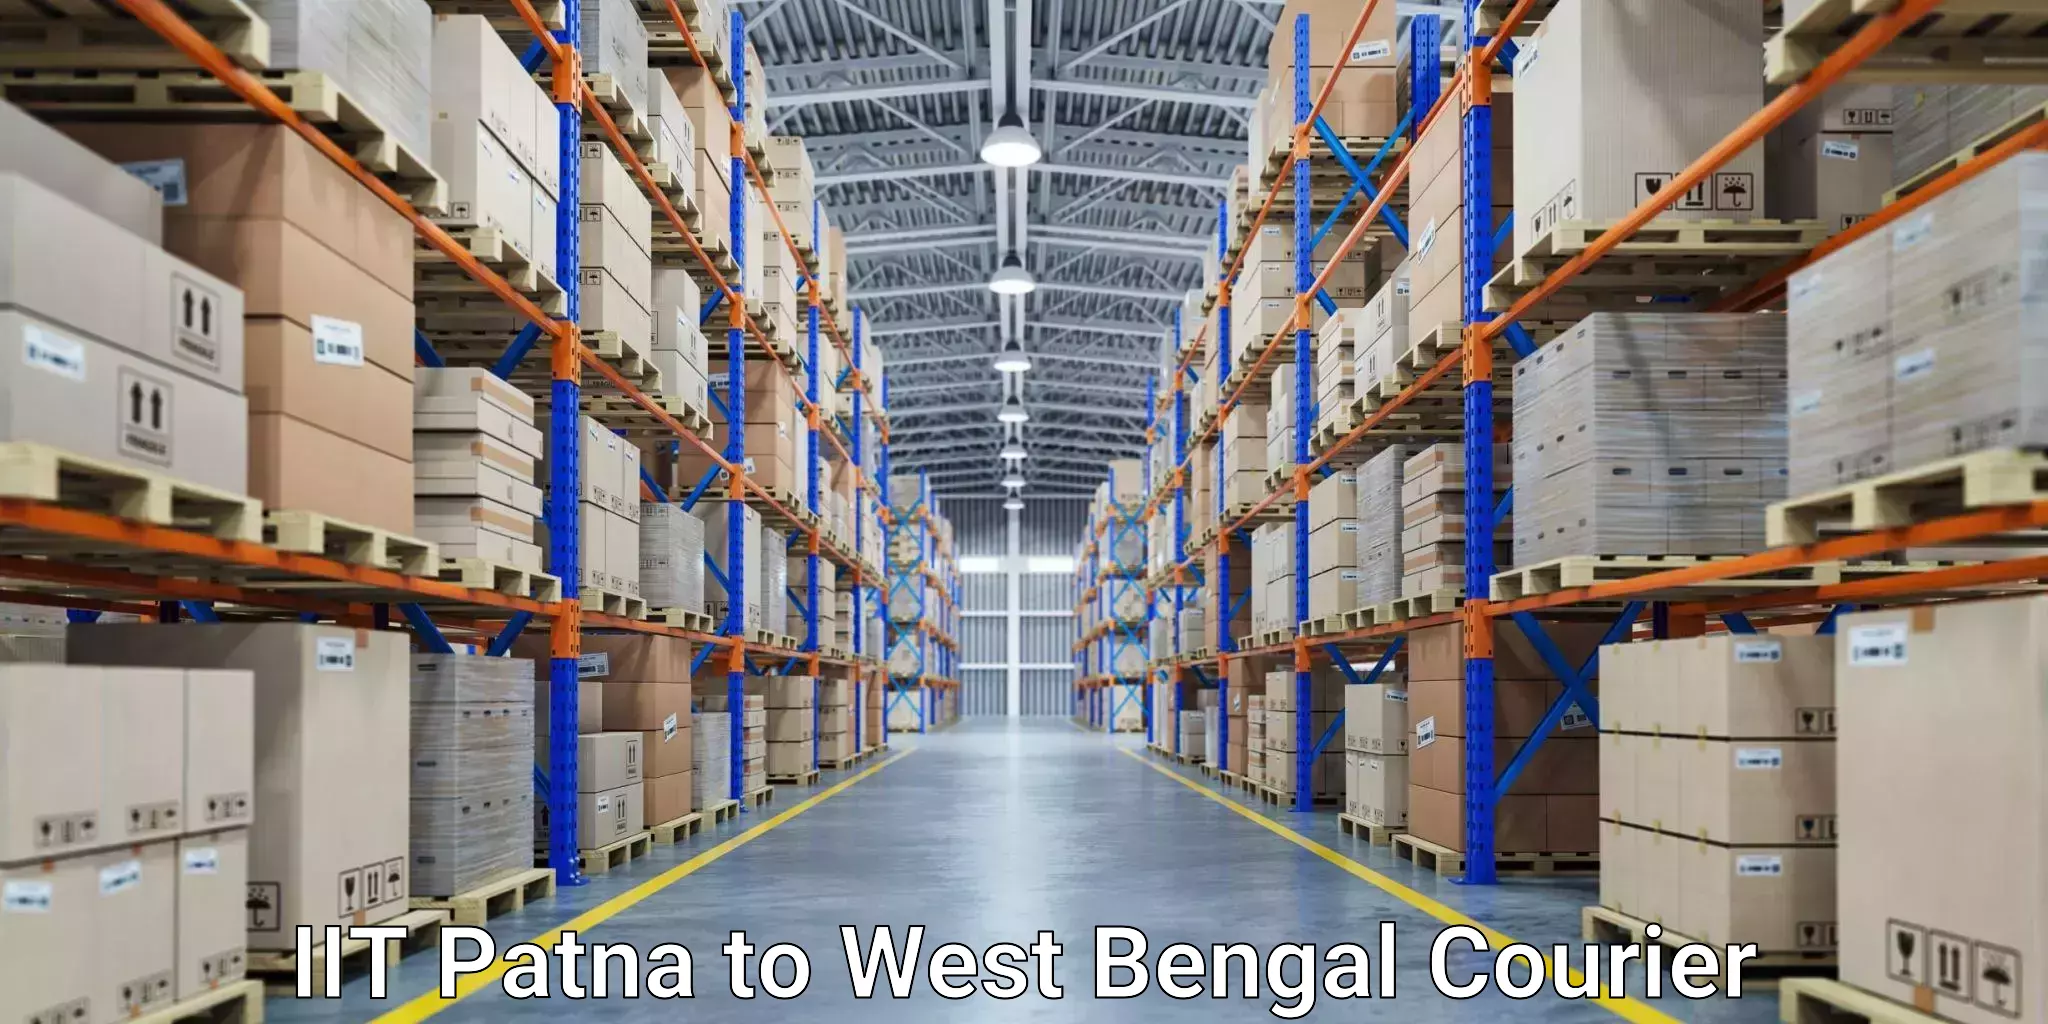 Door-to-door freight service IIT Patna to West Bengal